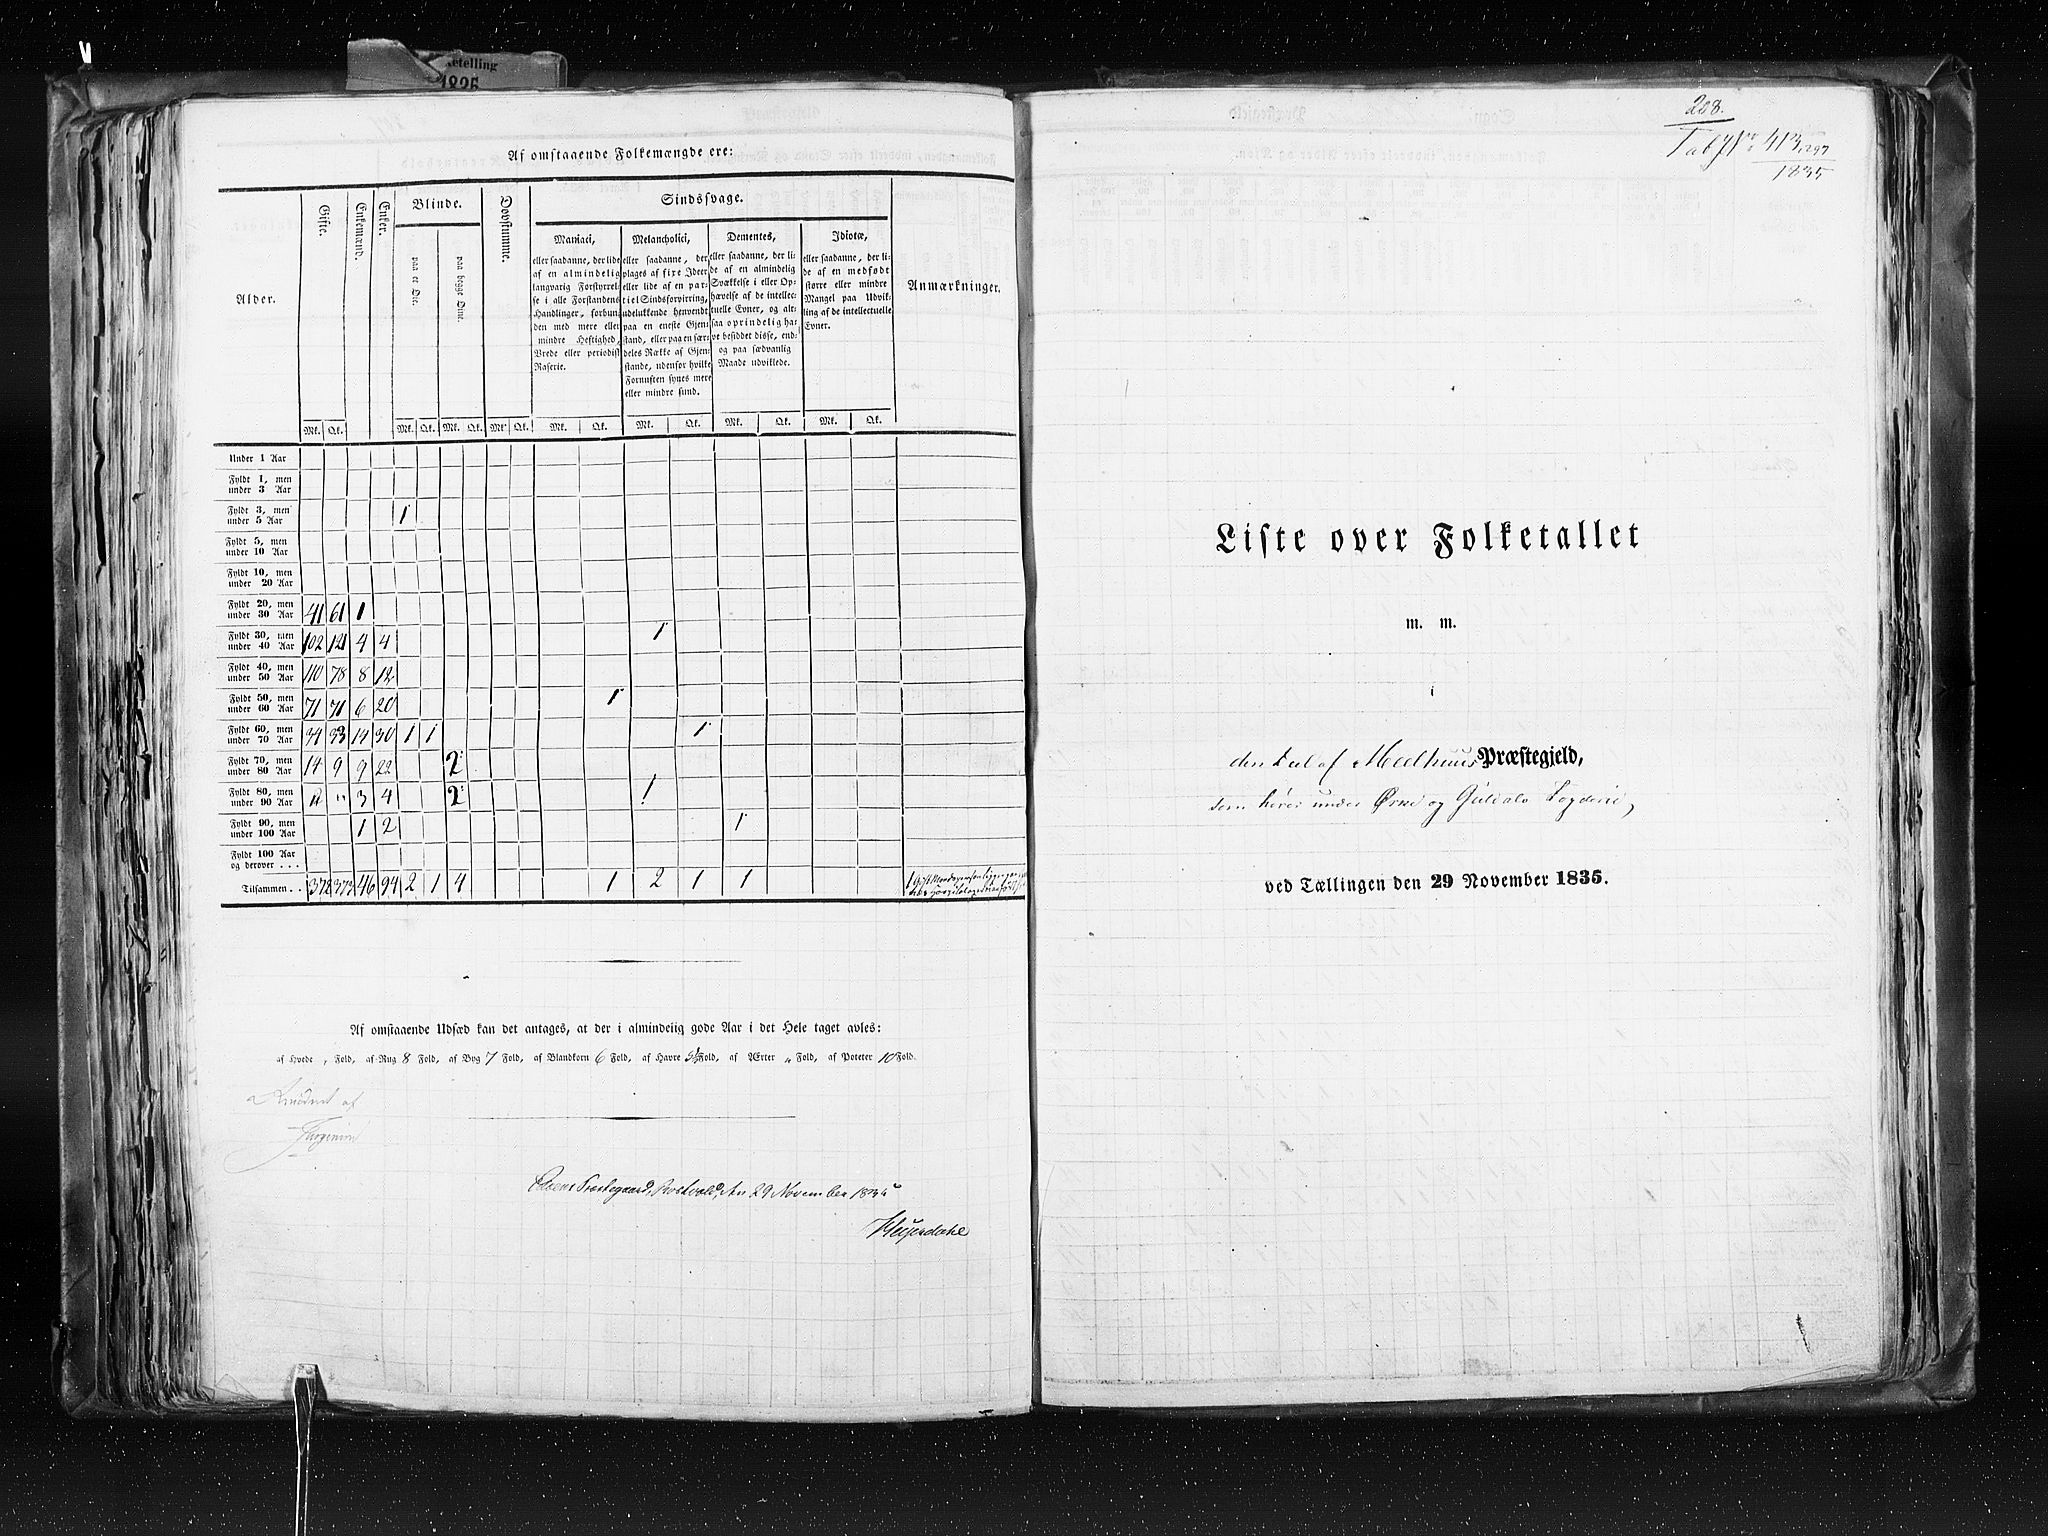 RA, Folketellingen 1835, bind 8: Romsdal amt og Søndre Trondhjem amt, 1835, s. 208